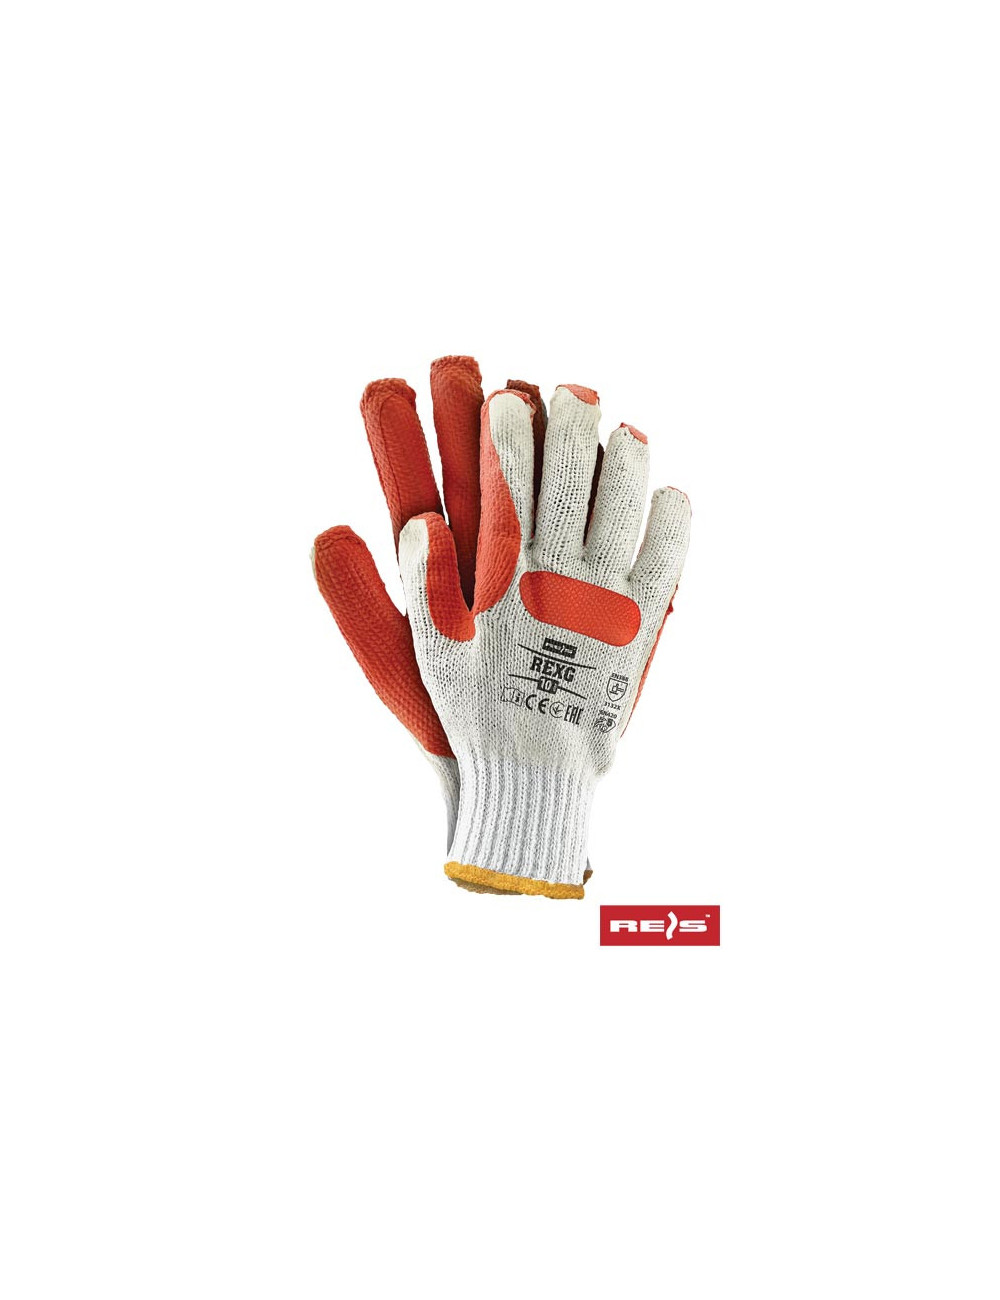 Protective gloves rexg wp white-orange Reis